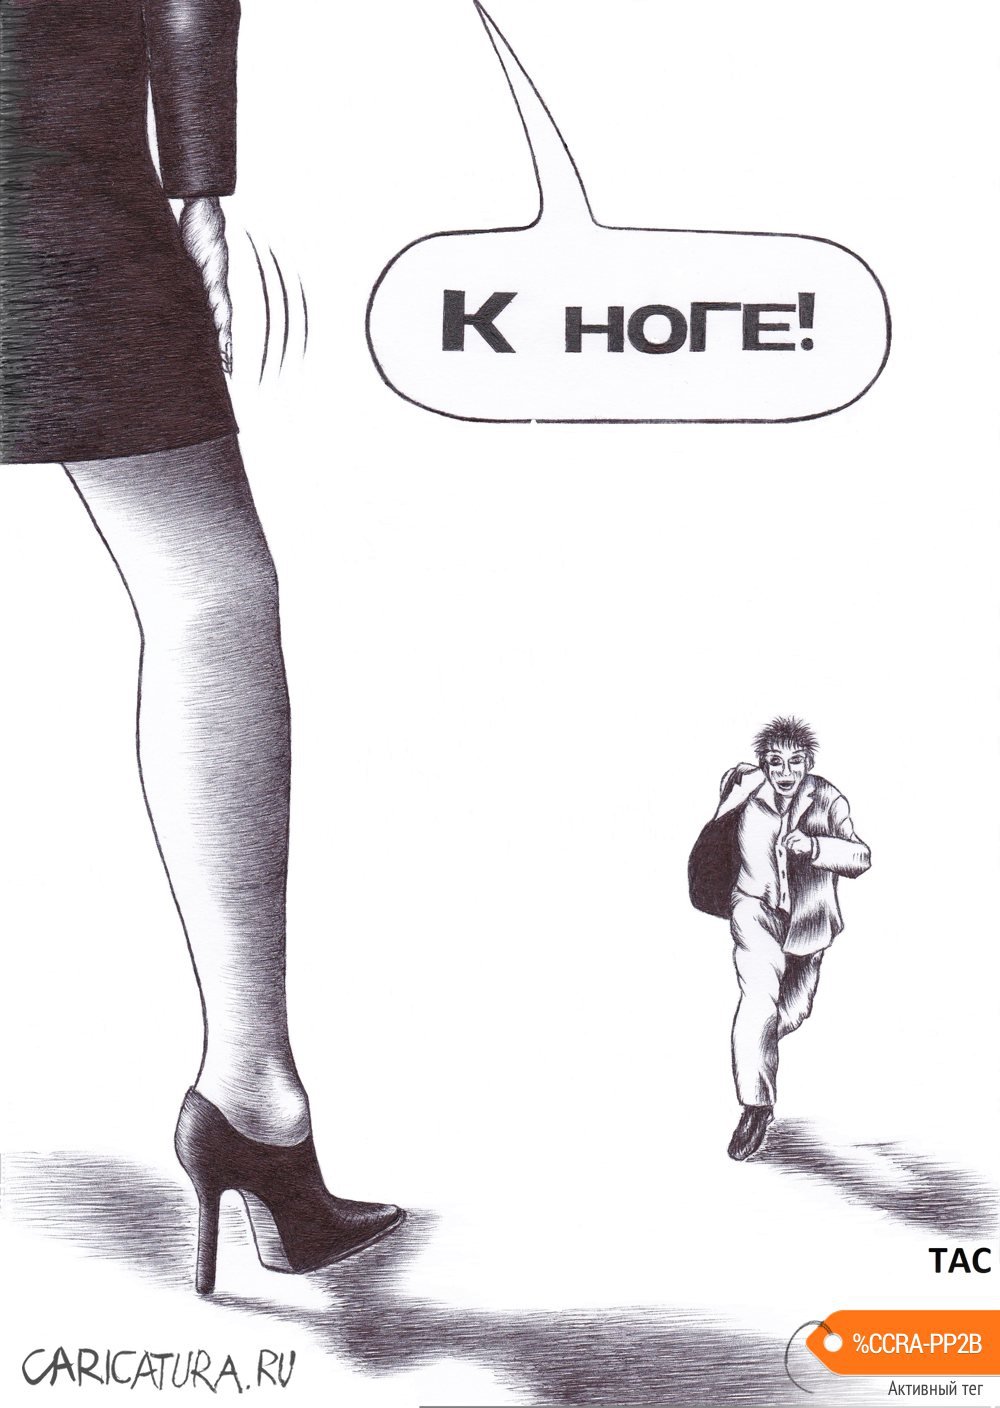 Карикатура "К ноге!", Александр Троицкий